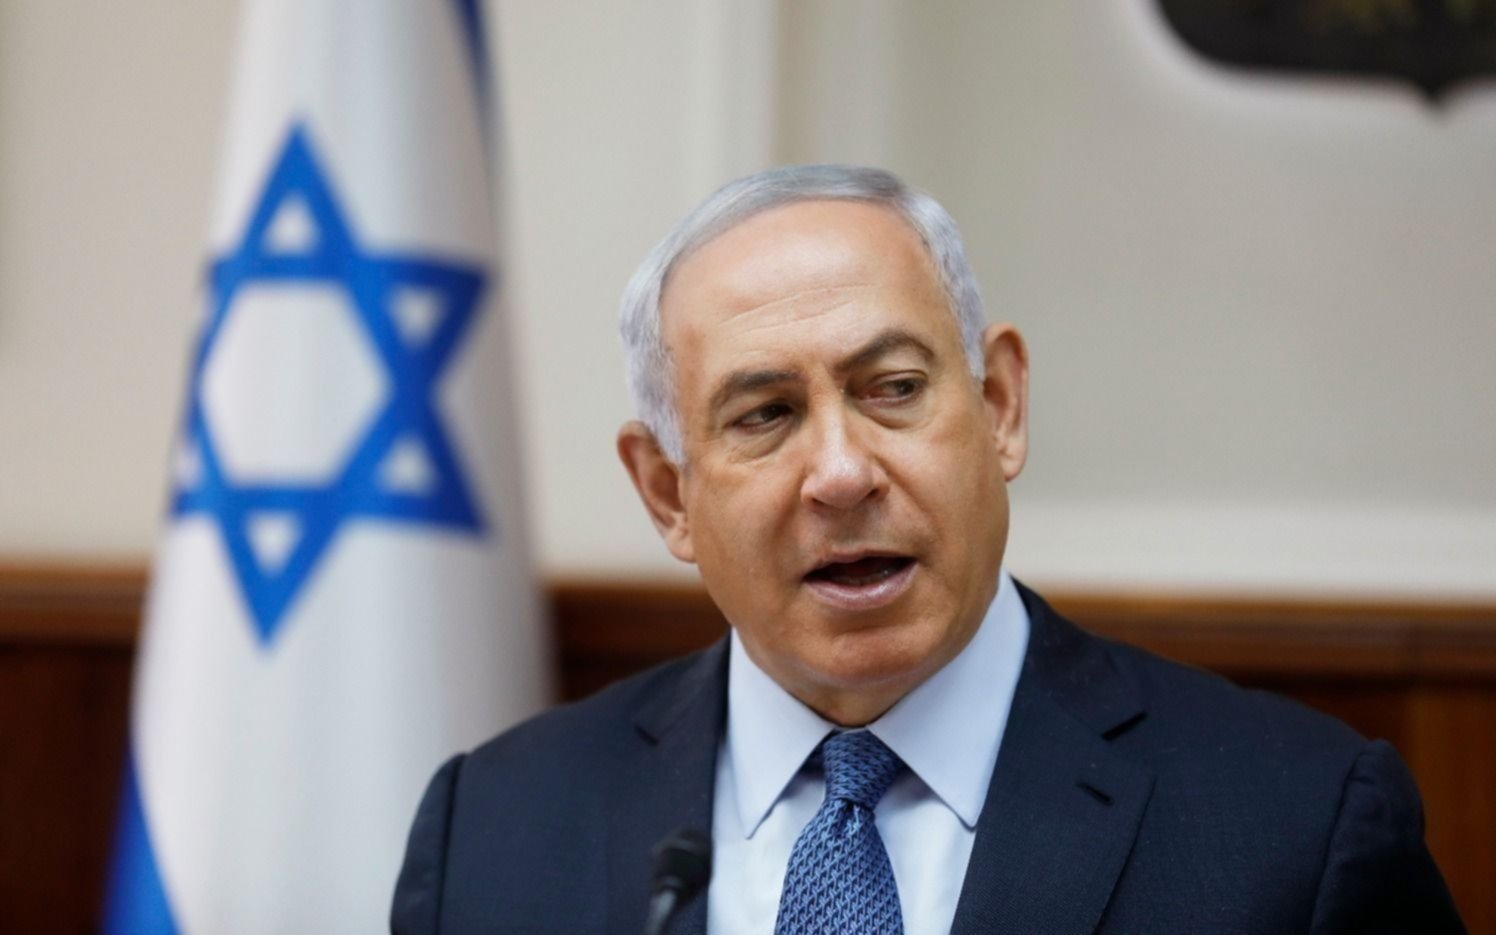 Acusación contra el “rey Bibi” hace tambalear su reinado